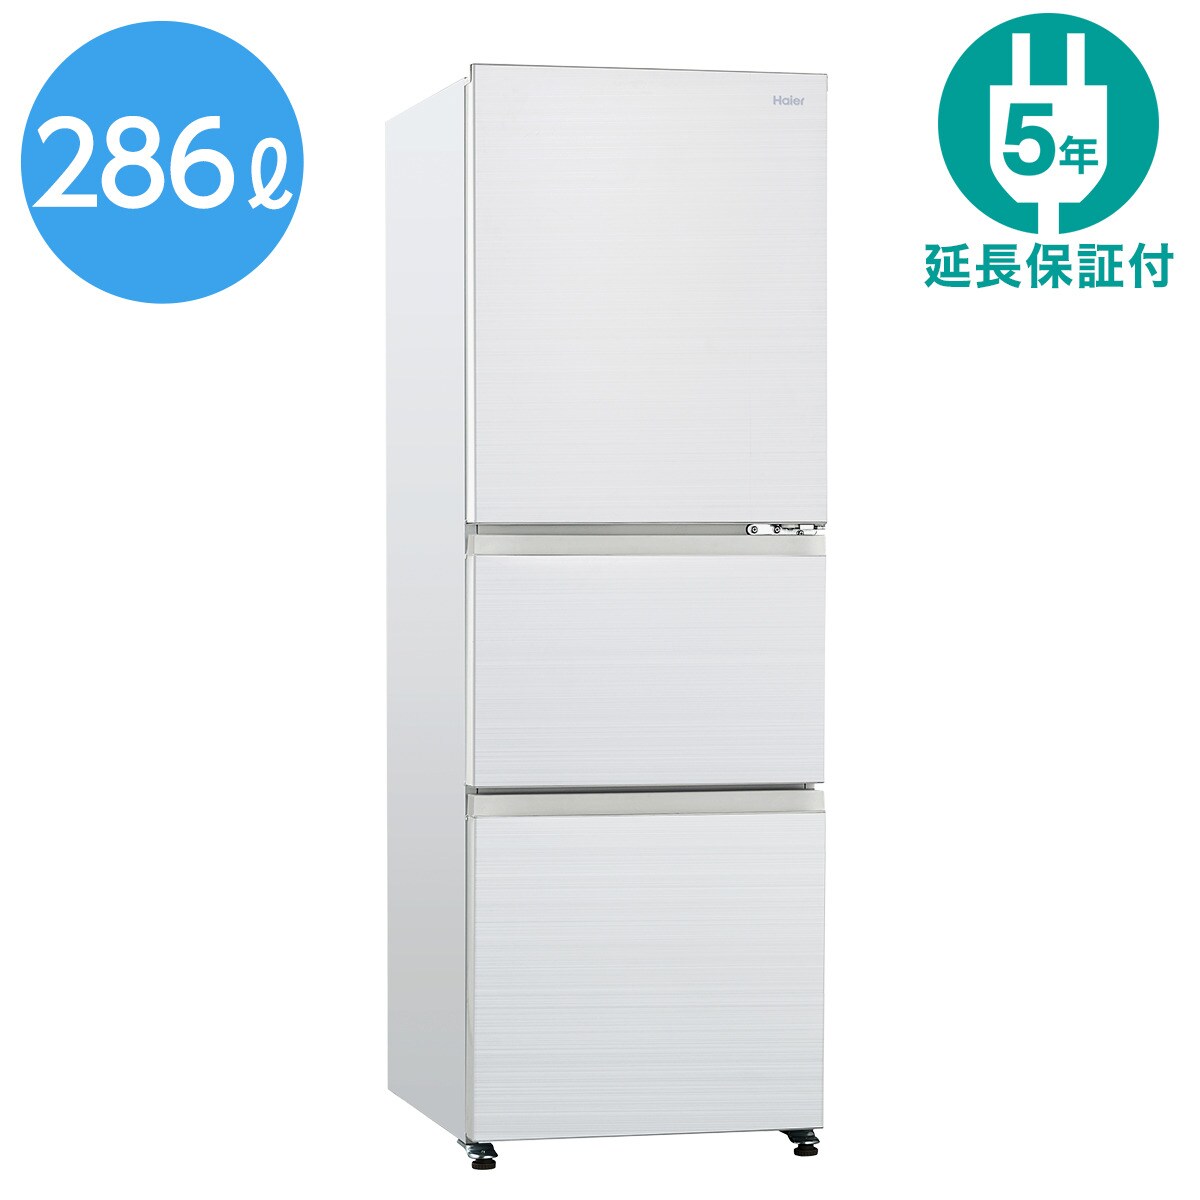 286L ノンフロン冷凍冷蔵庫(JR-CV29A ホワイト) 延長保証付き通販 